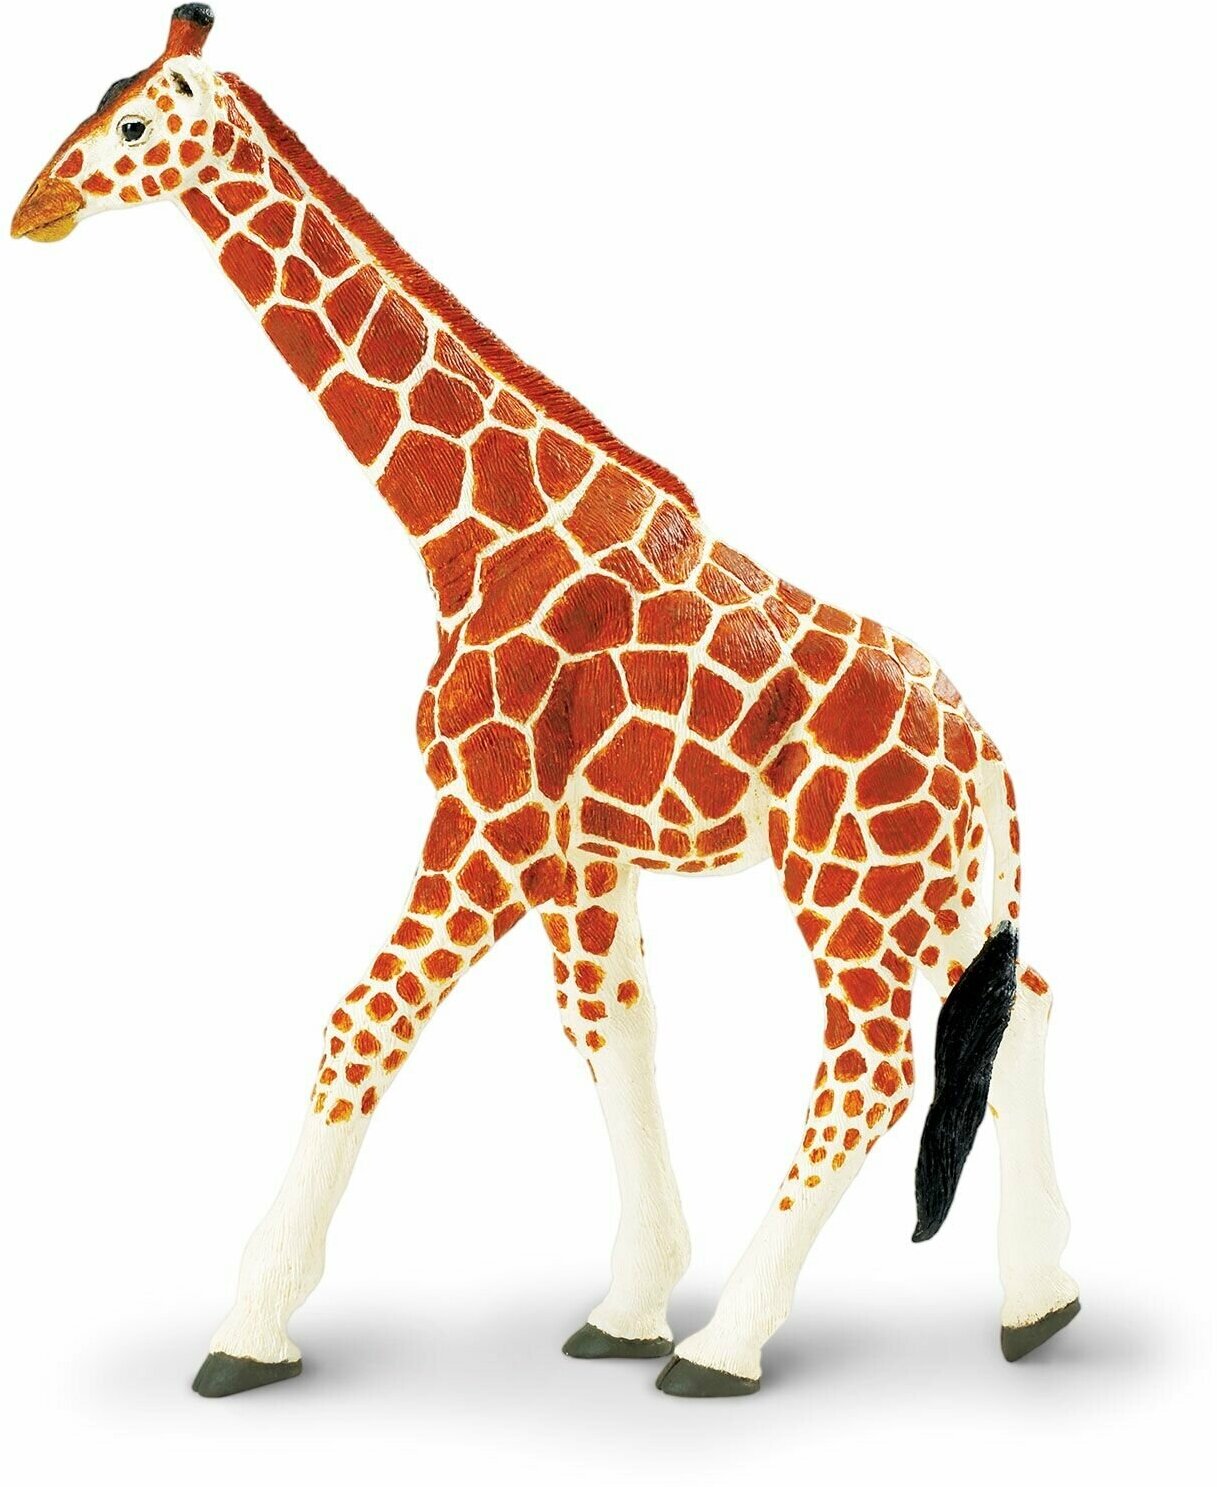 Фигурка животного Safari Ltd Сетчатый жираф XL, для детей, игрушка коллекционная, 111189